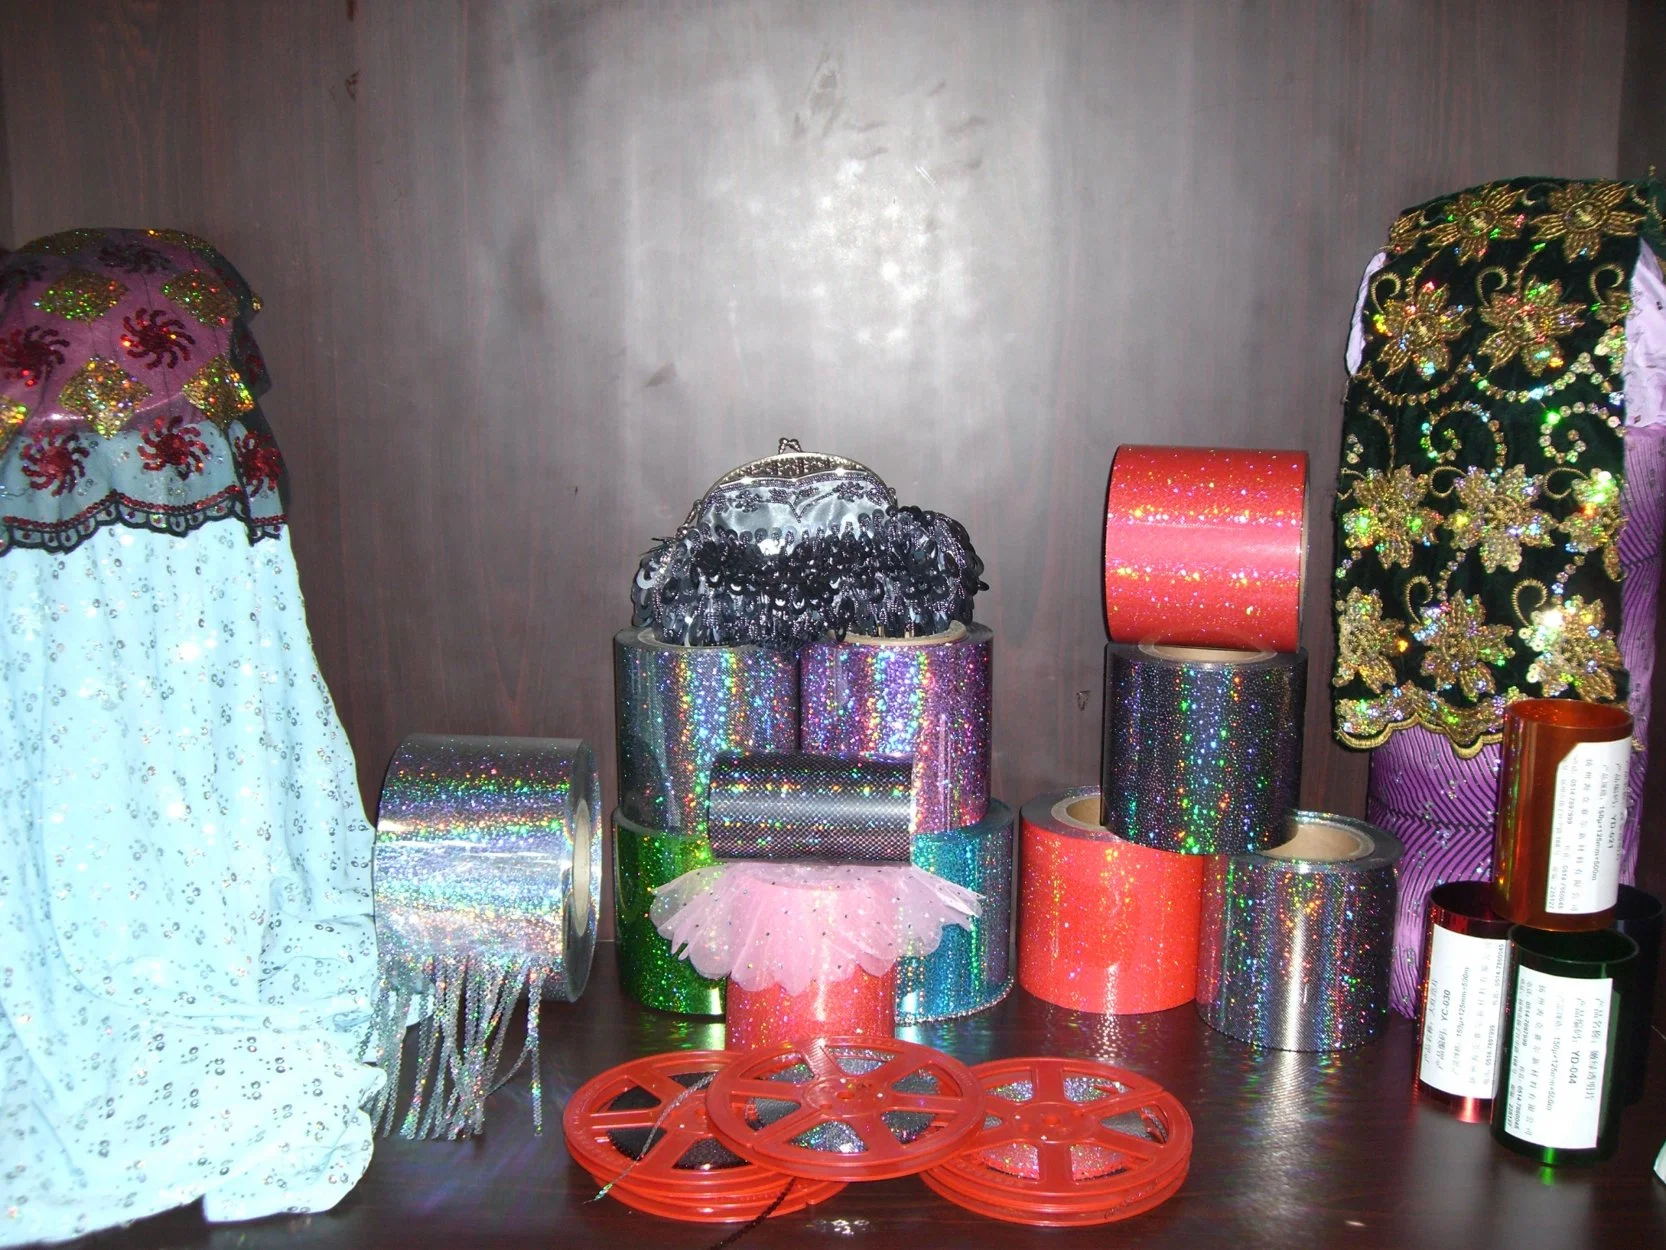 35micron/50micron/75micron/100micron Pet Metallized Foil for Glitter/Sequins/Gift